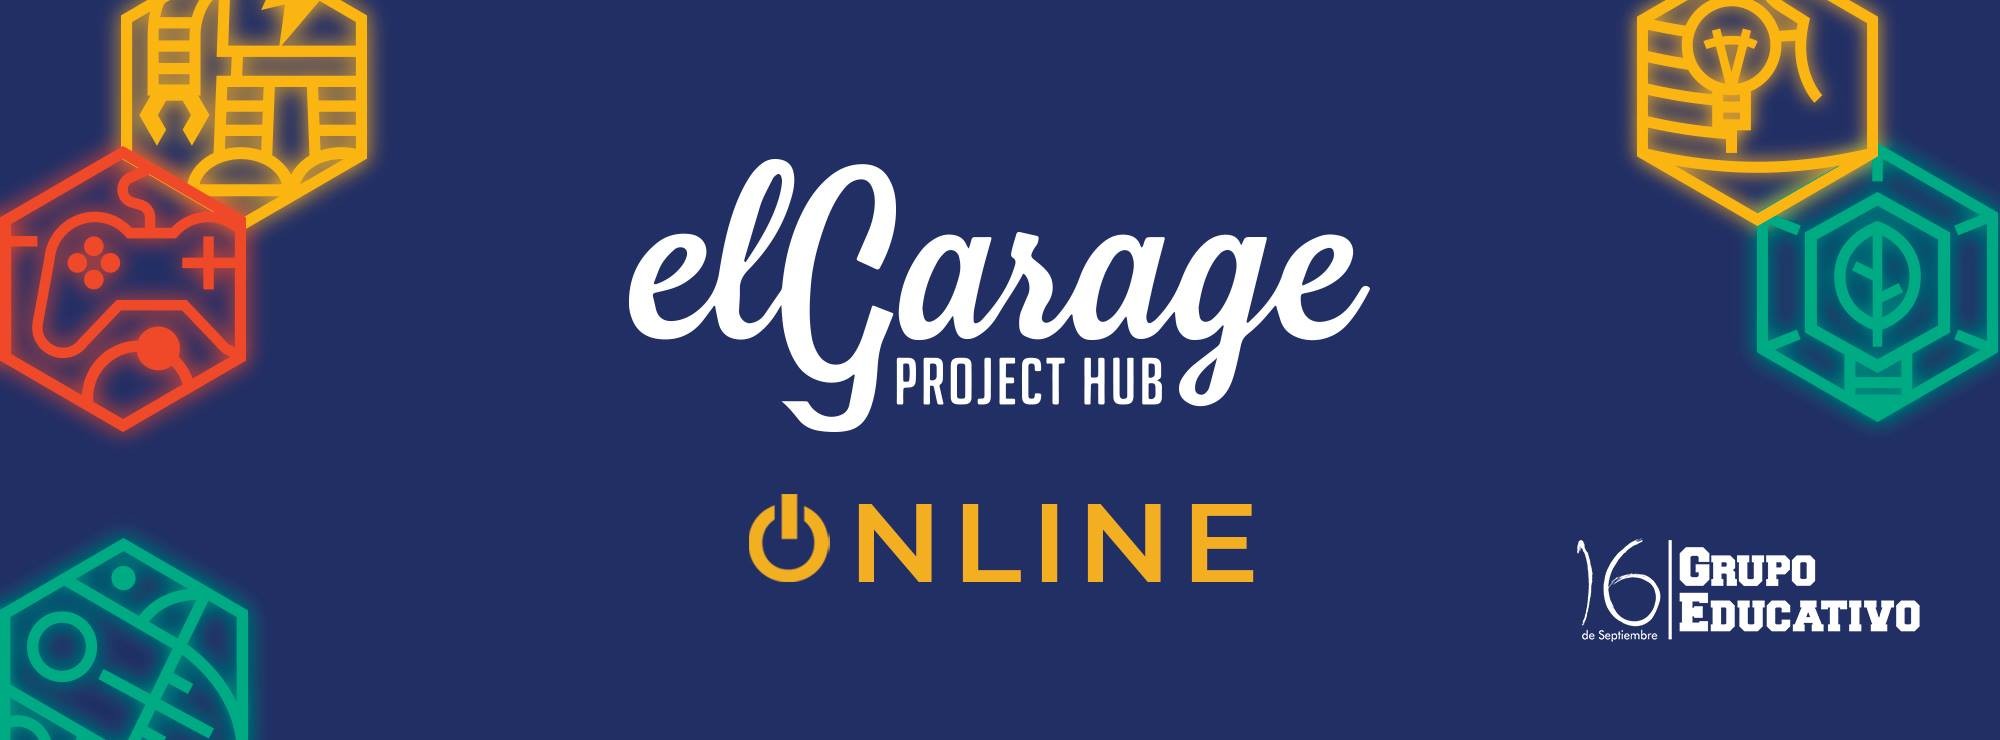 el garaje project hub